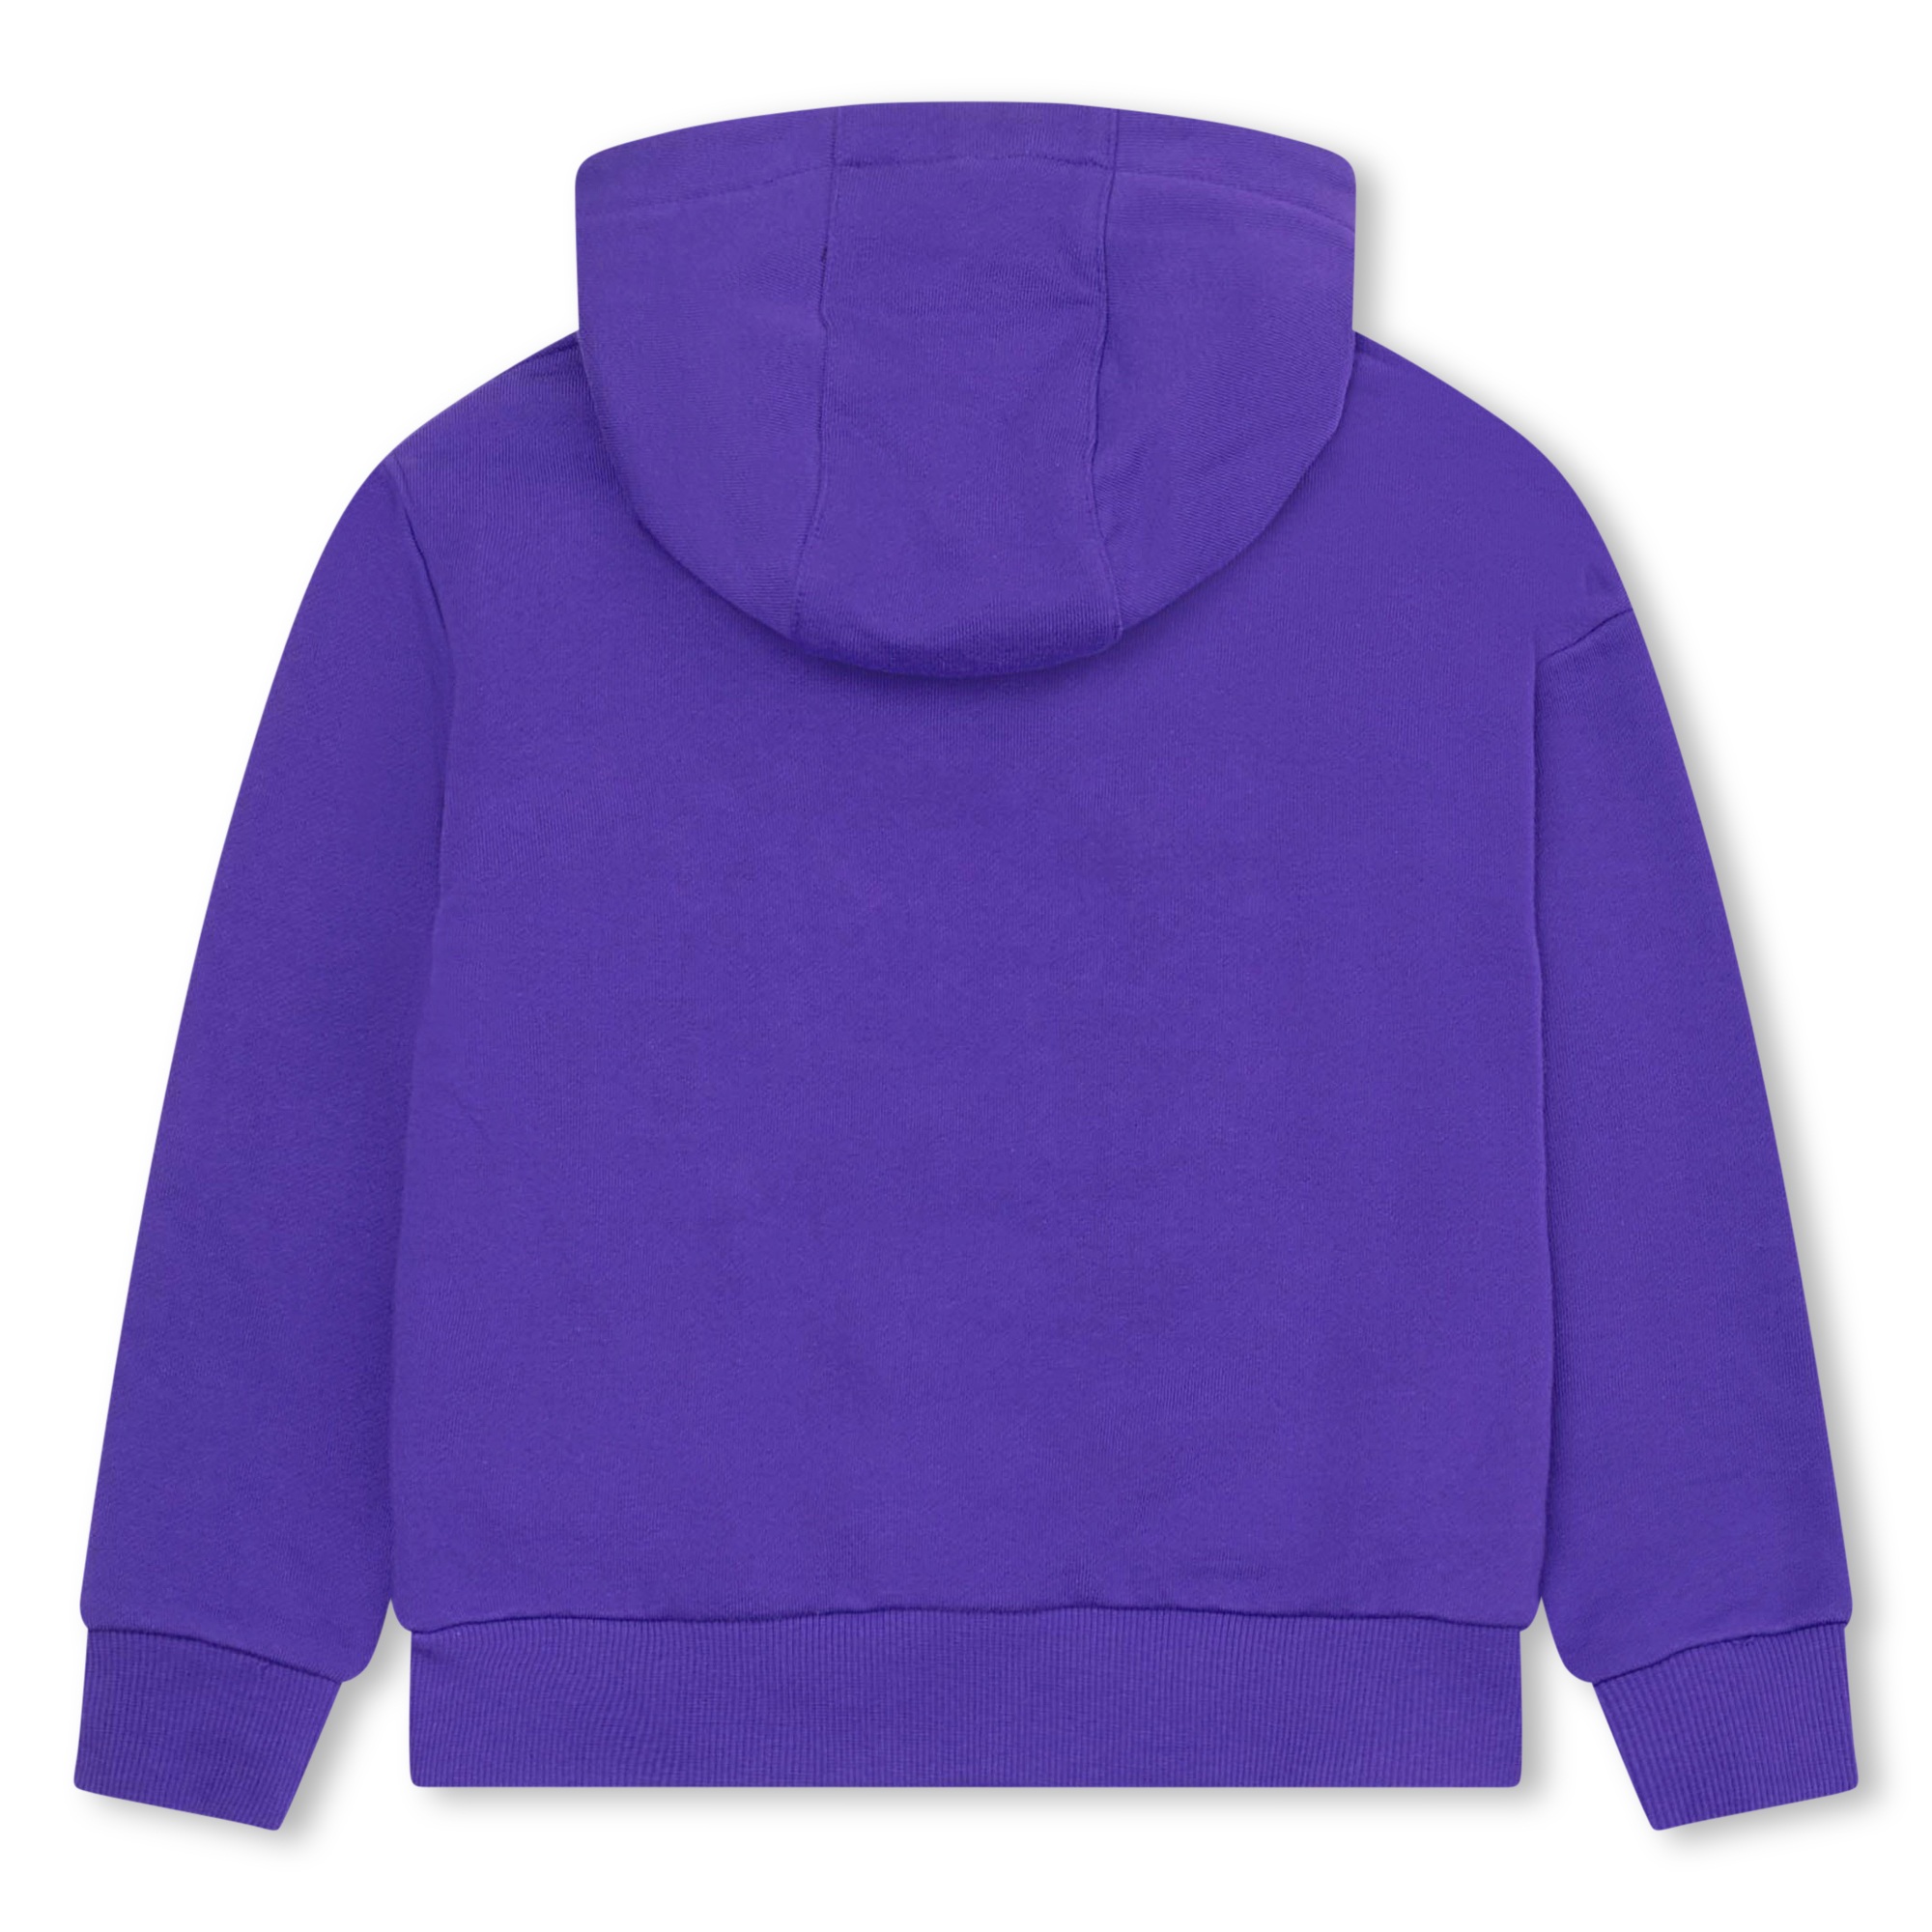 Hooded sweatshirt KENZO KIDS for BOY